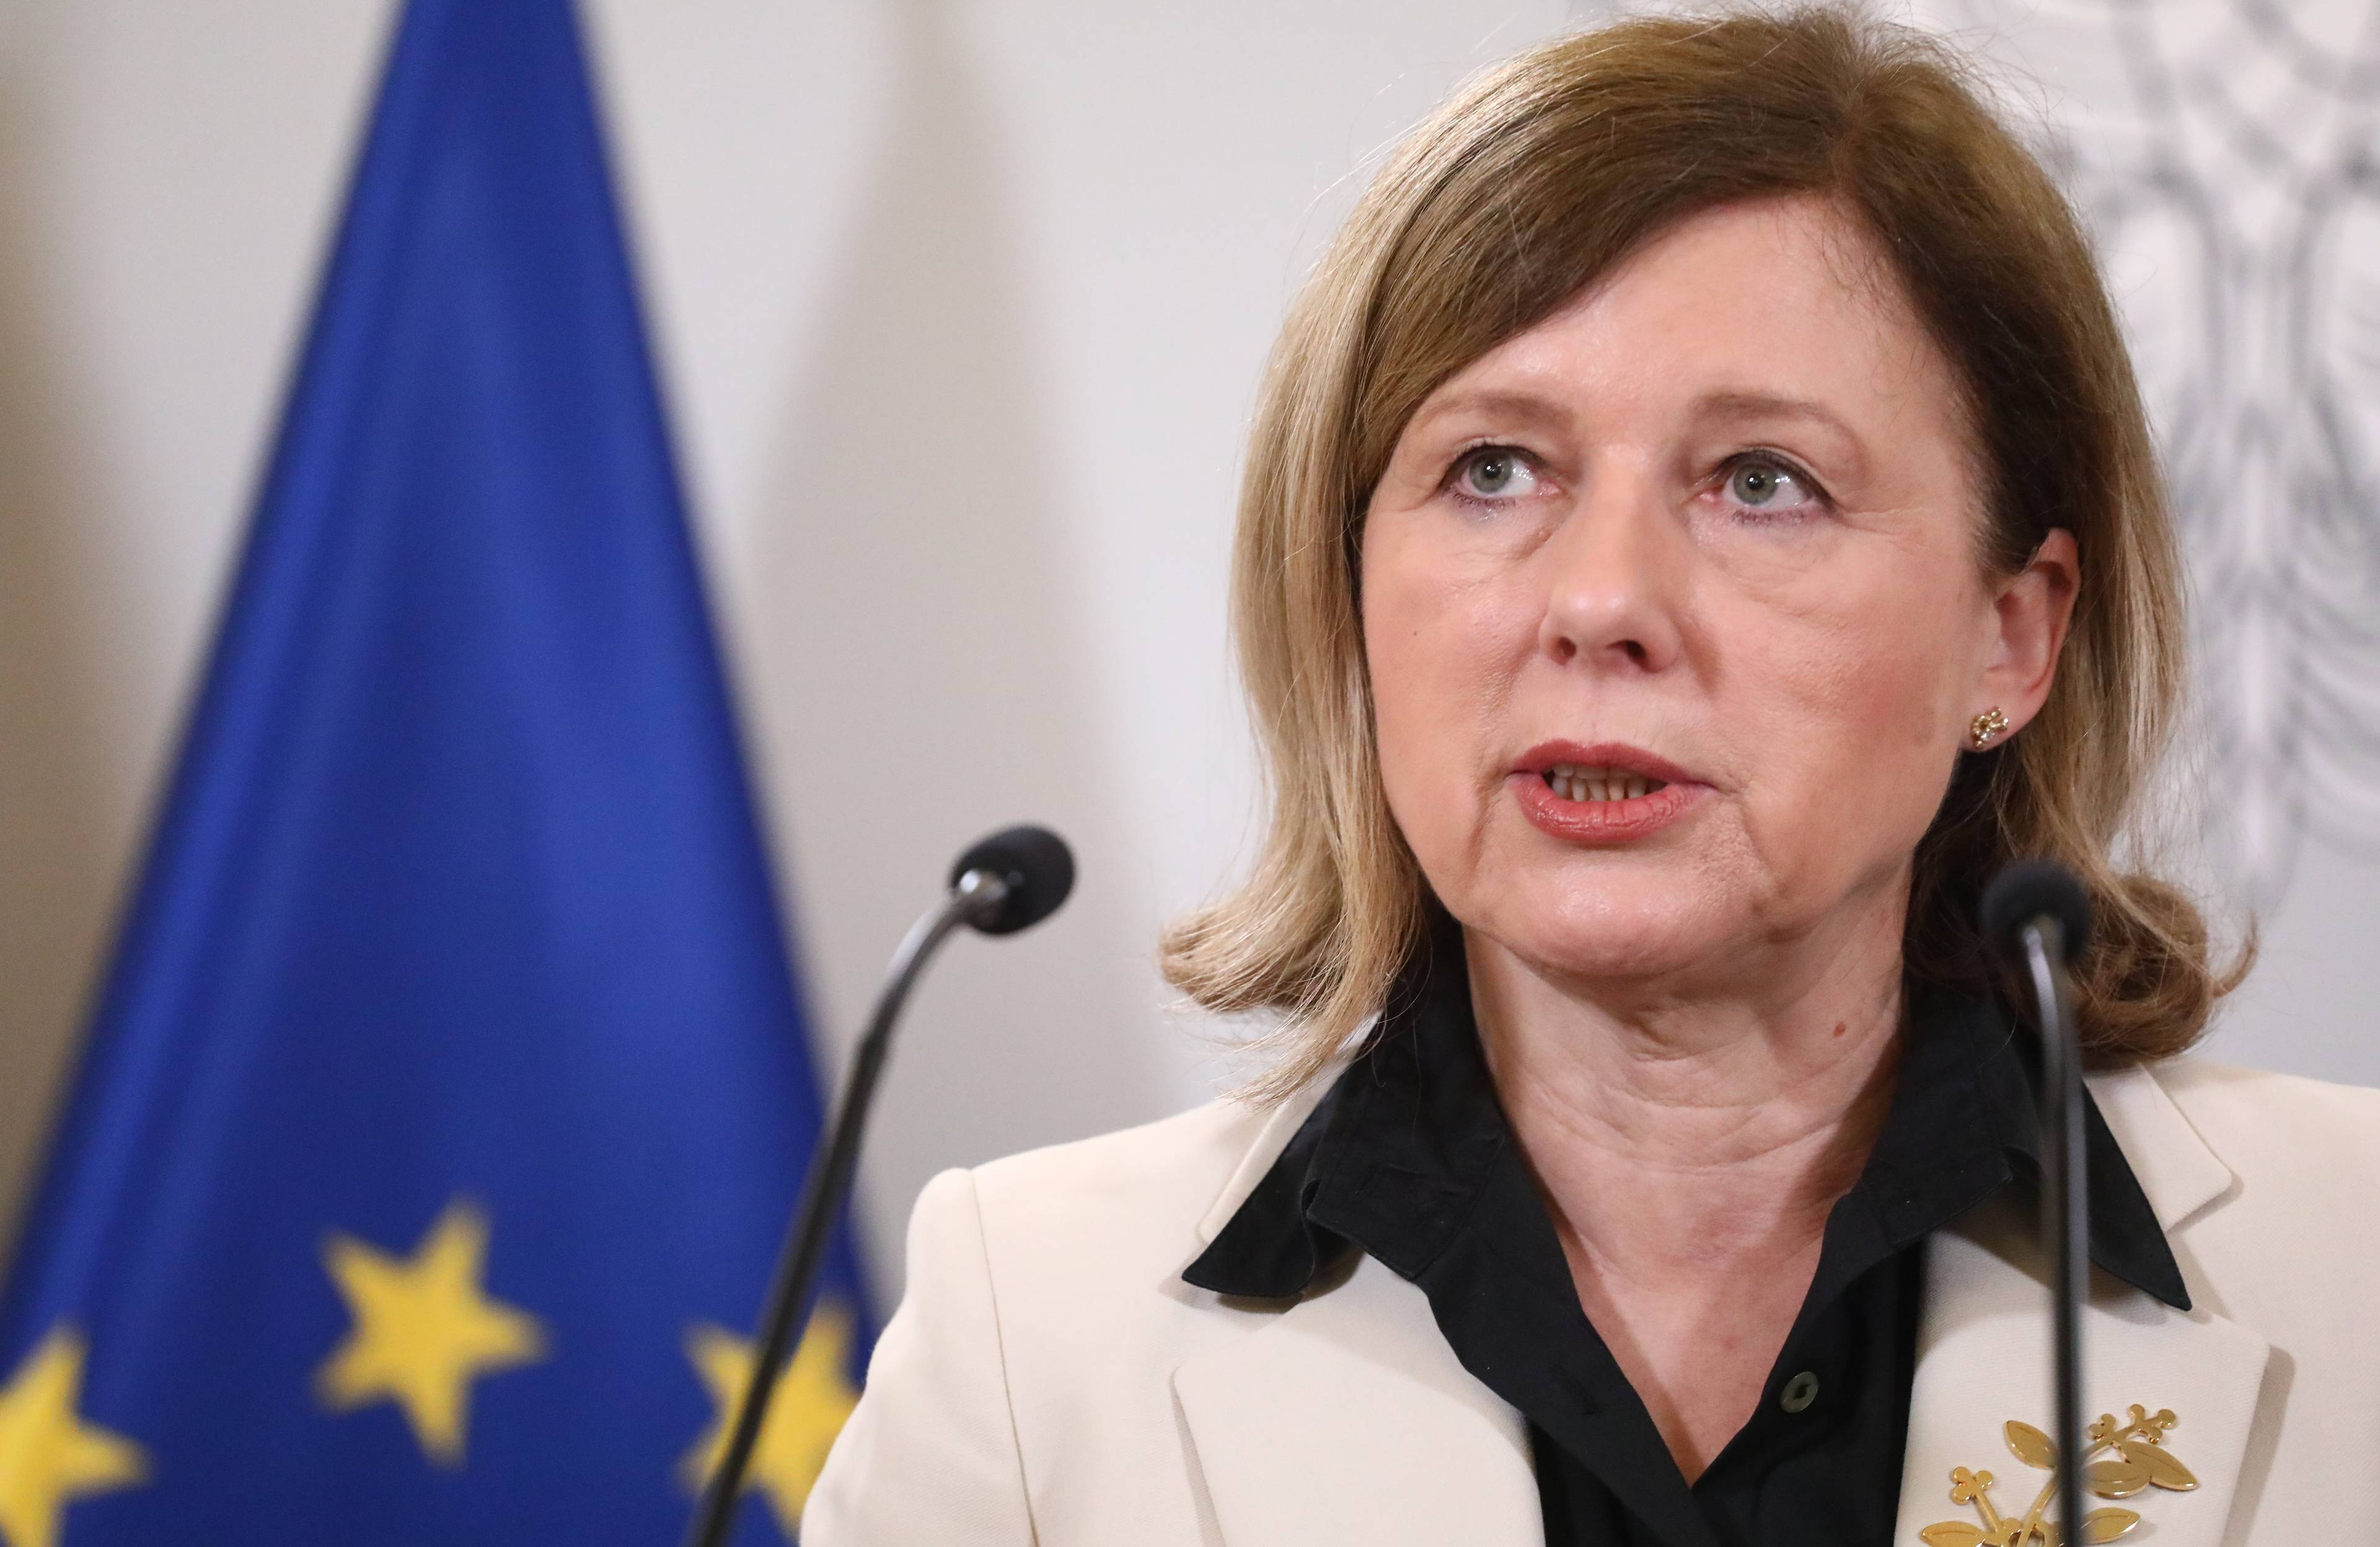 Vera Jourová podczas konferencji prasowej na tle flagi Unii Europejskiej